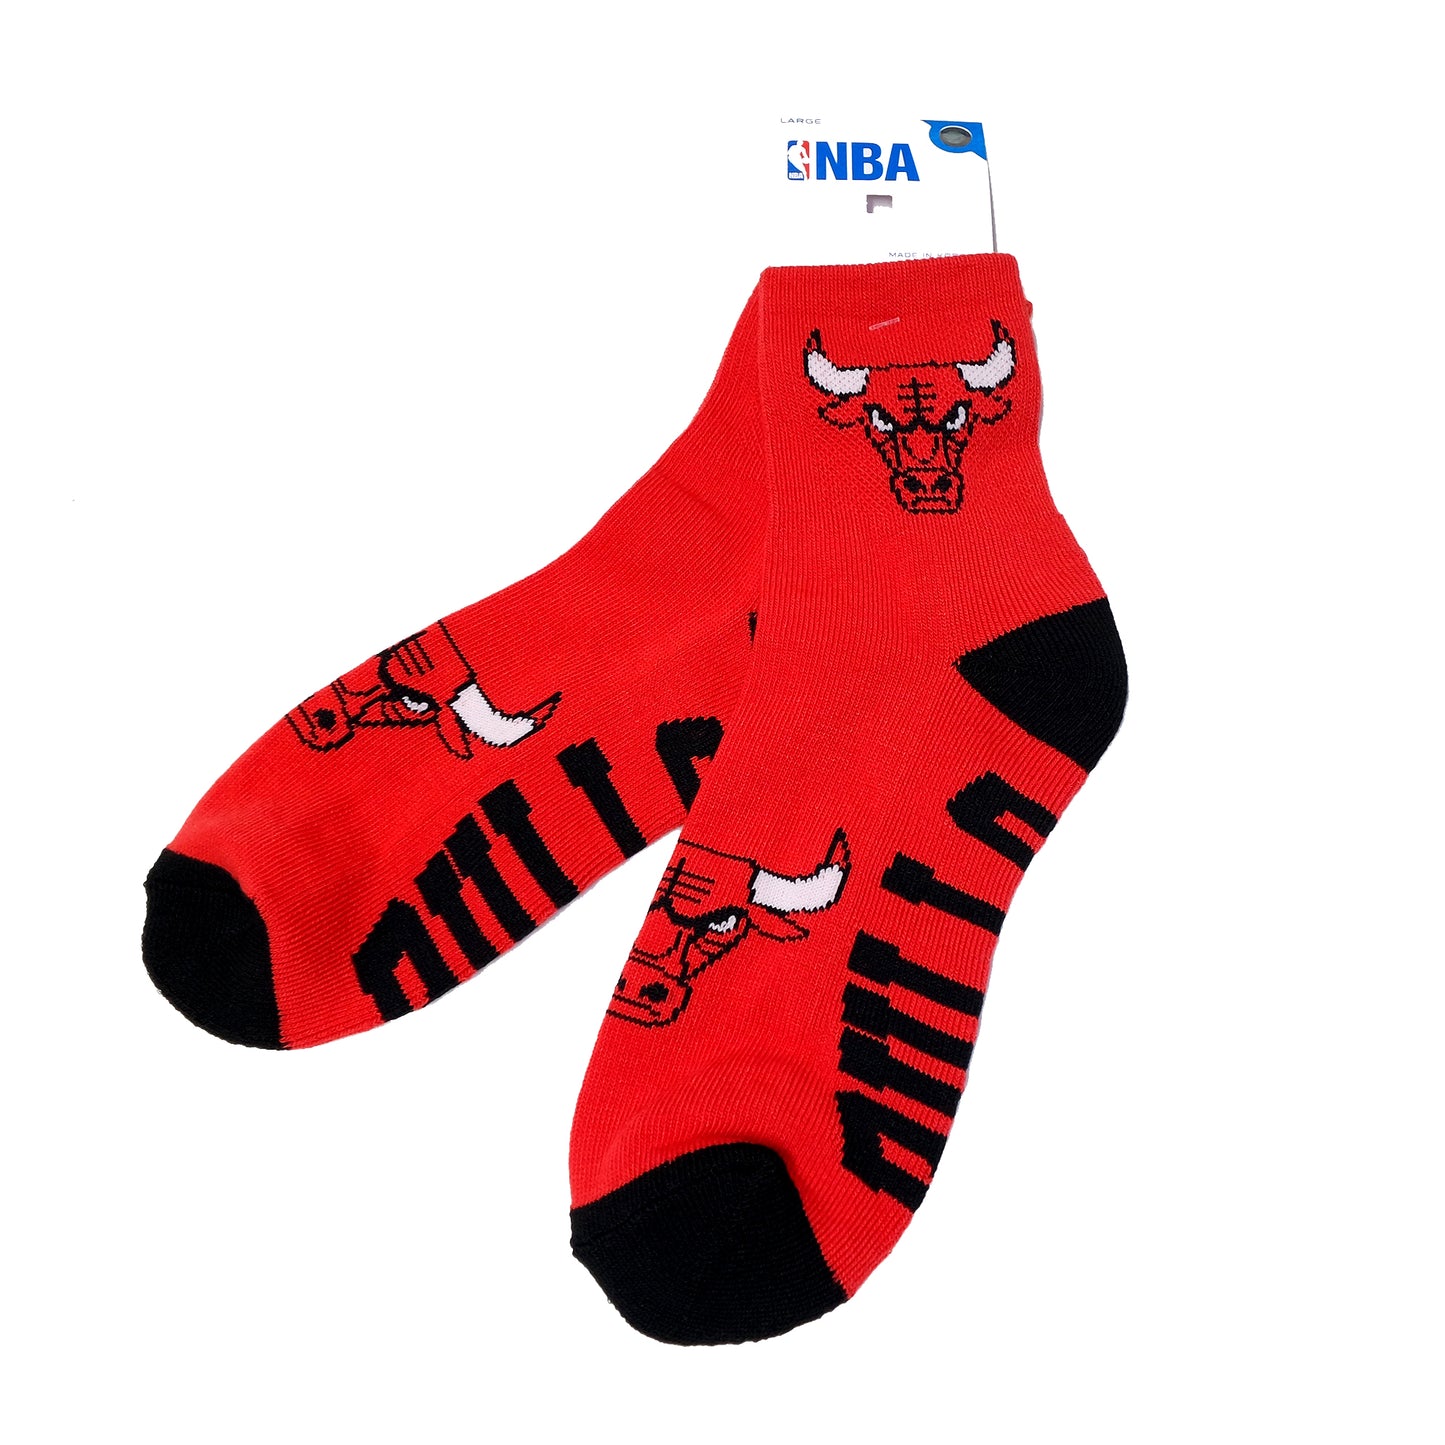 BF 501 Quarter Socks Chicago Bulls Large(8-13)